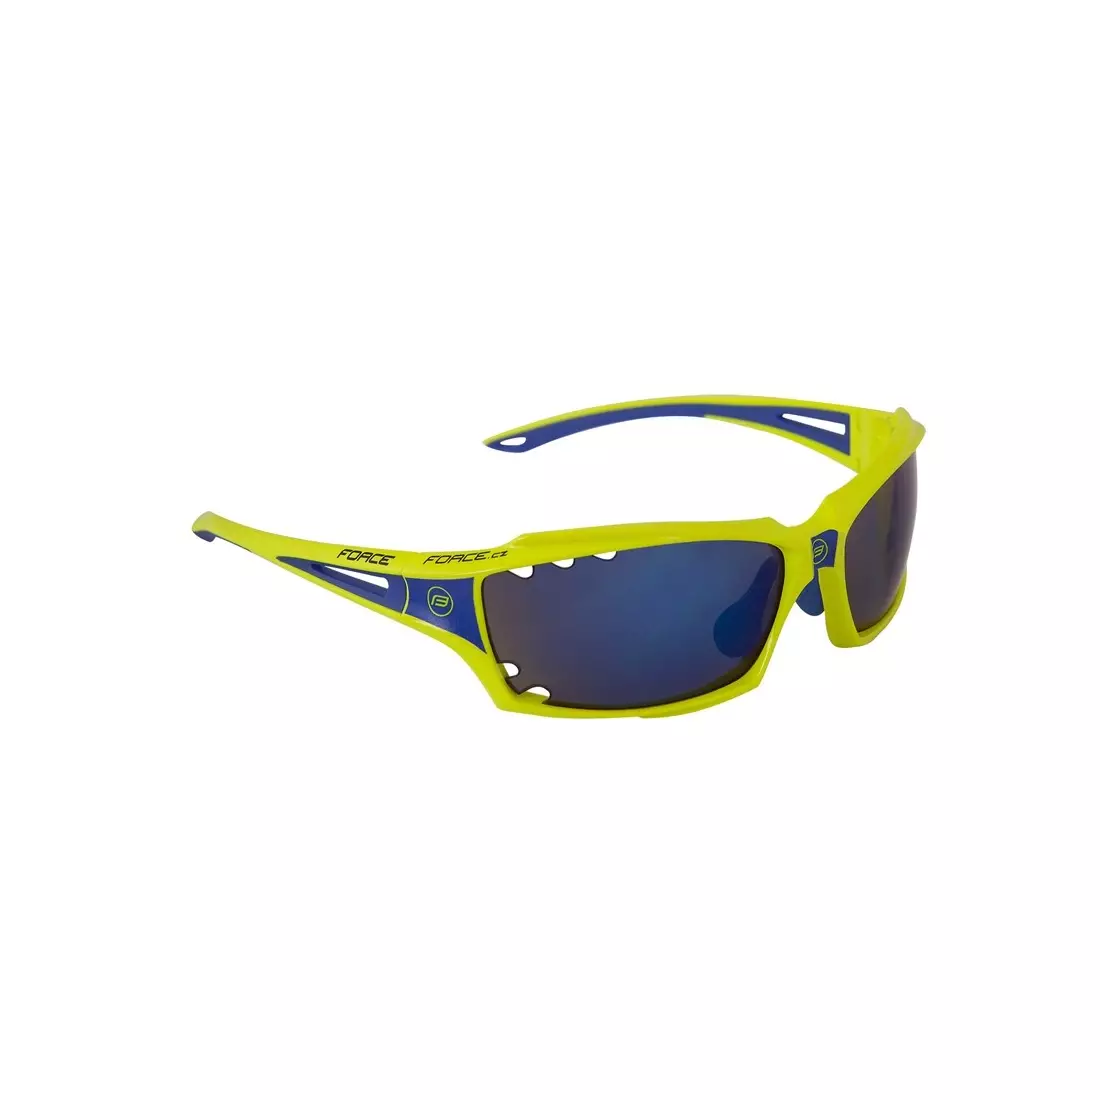 FORCE VISION Cyklistické/sportovní brýle fluo 90973 vyměnitelné čočky